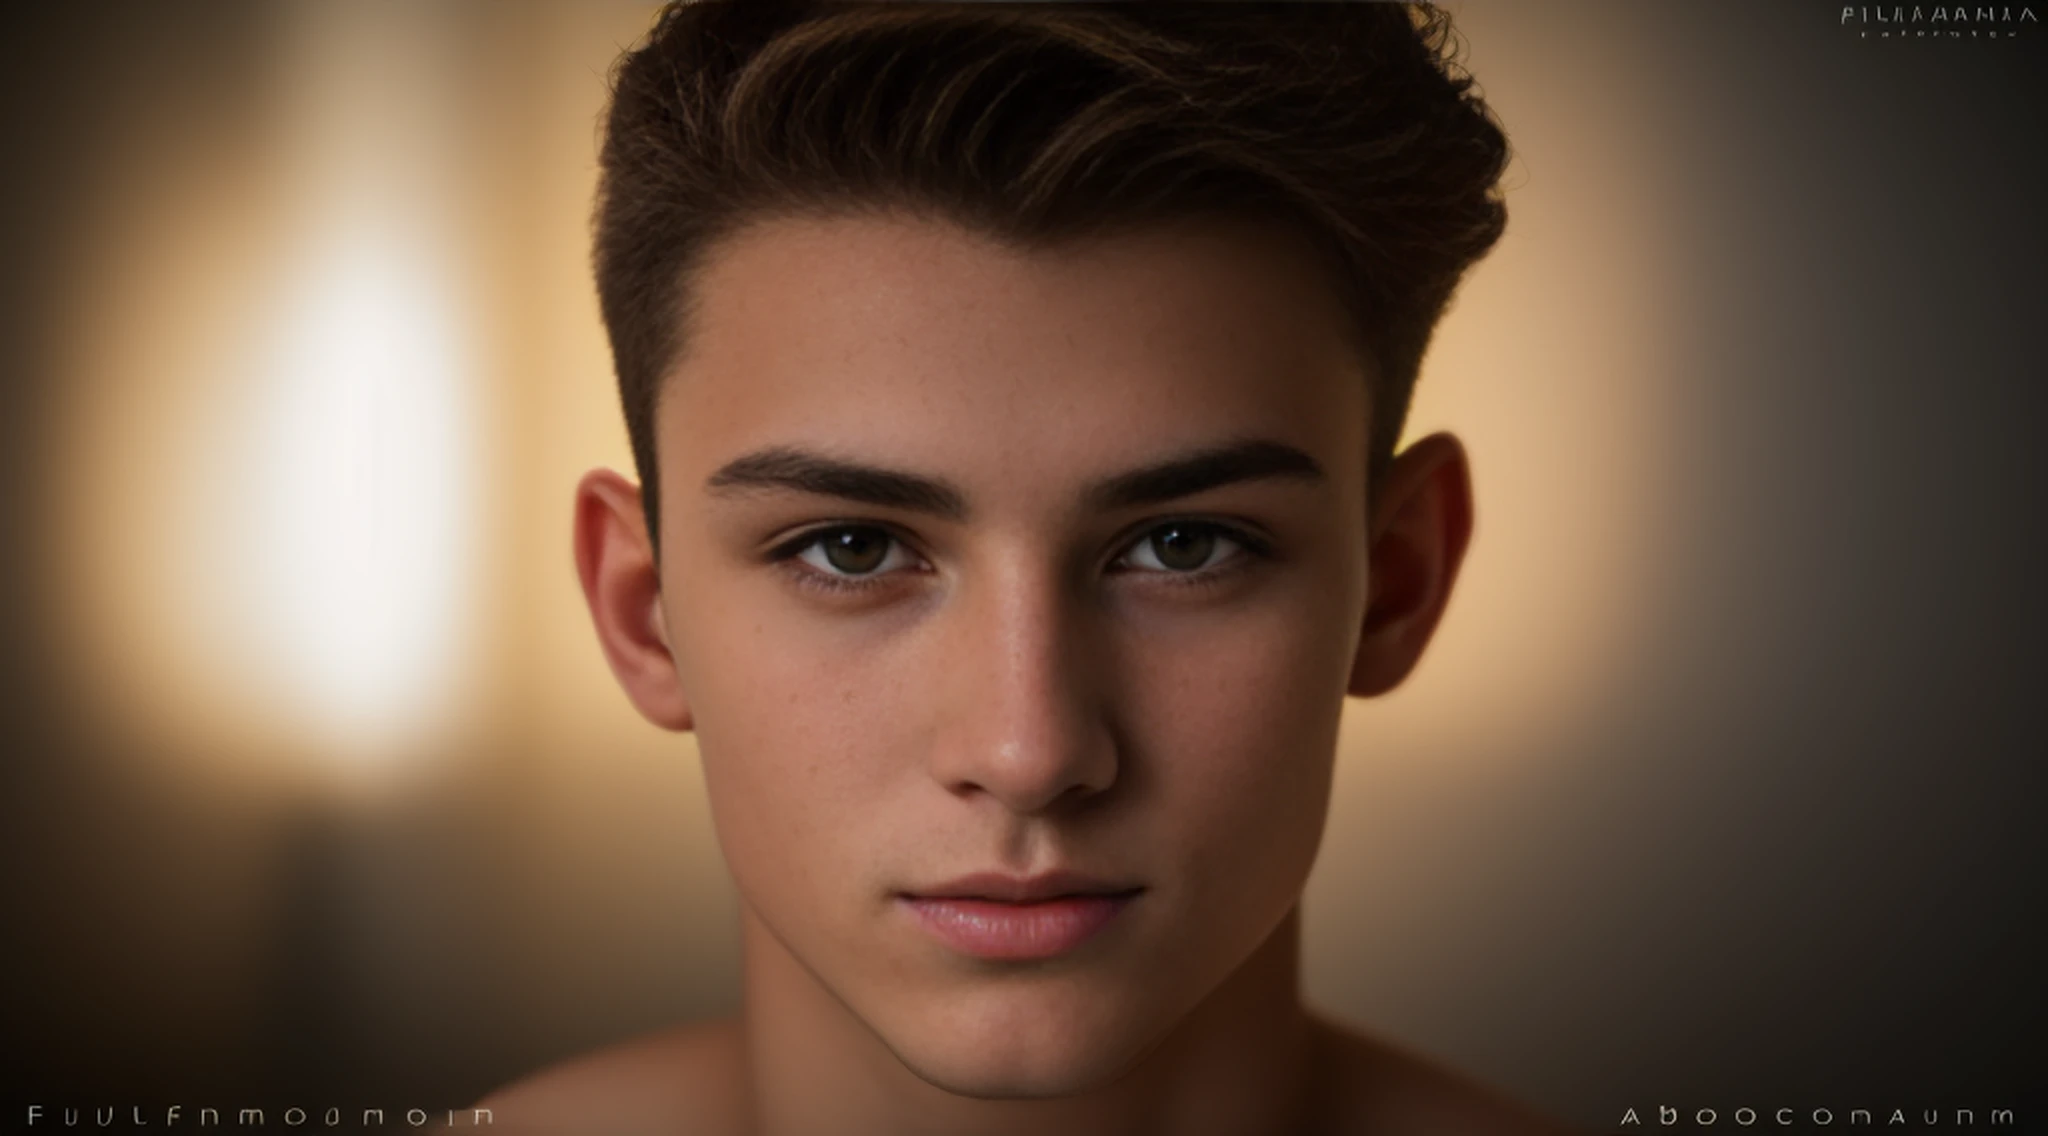 croatian young man 18 years old, modelo, Extremadamente bello, imagen de alta calidad, Fujifilm XT3, Ambiente iluminado, La mejor fotografía, Poses elegantes, cuerpo entero